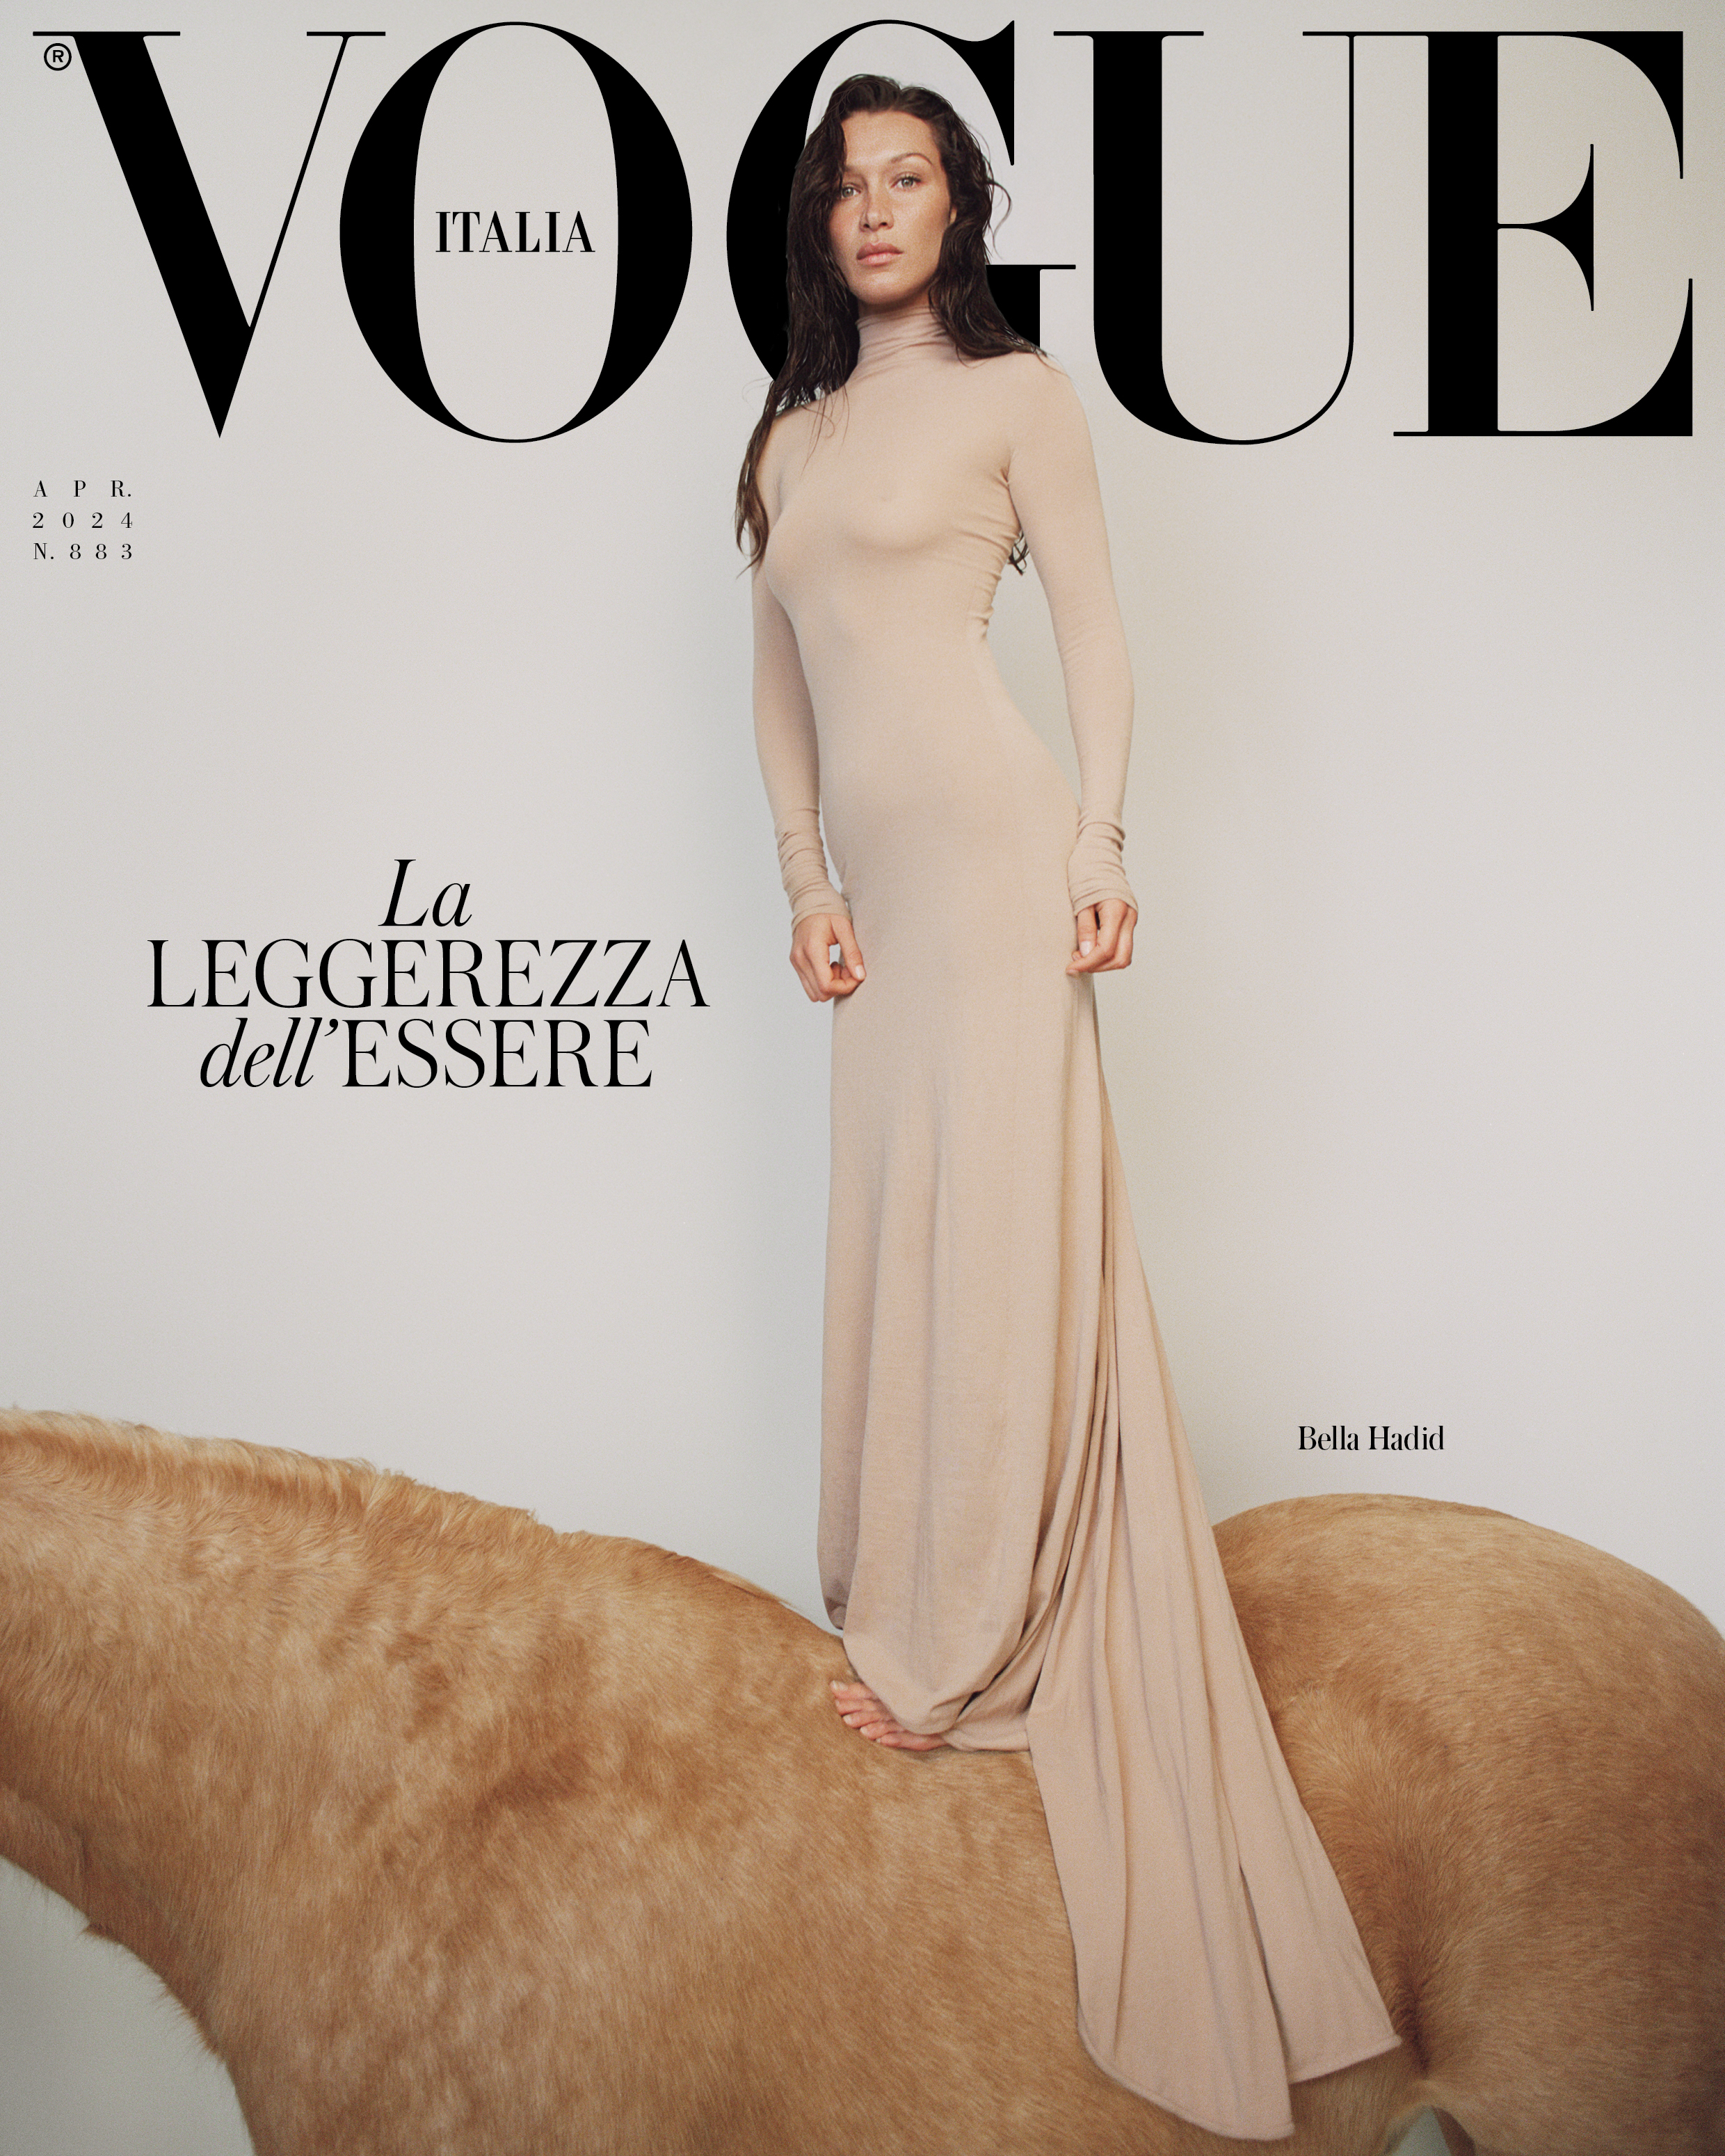 Bella für die April-Ausgabe der Vogue Italia